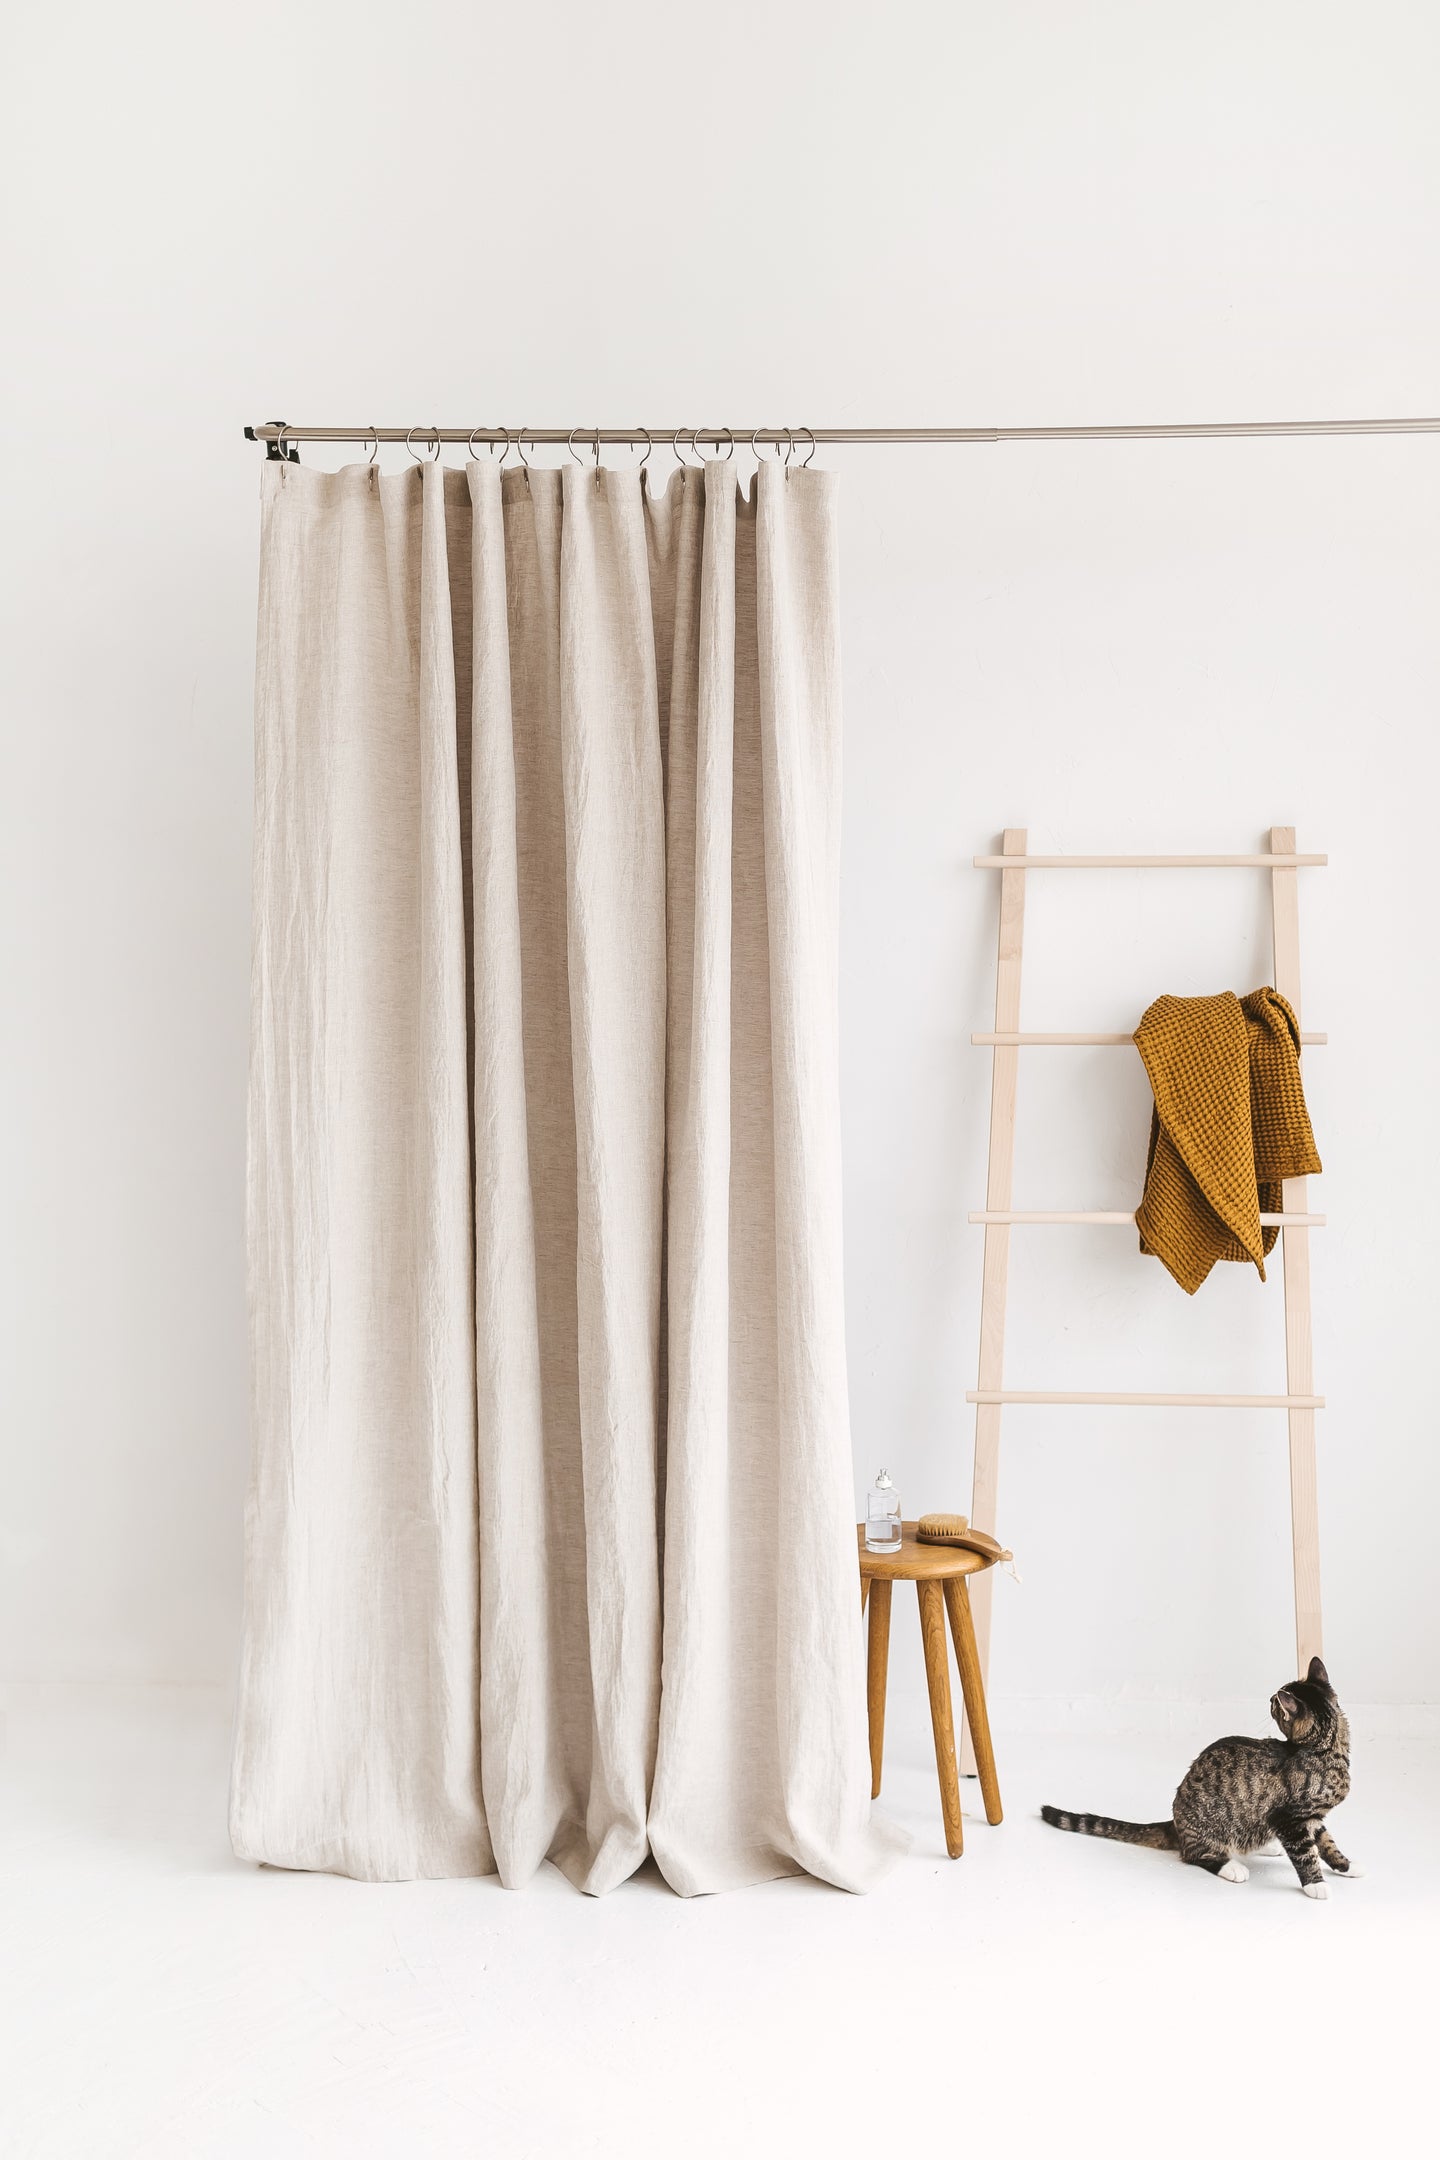 Linen shower curtains